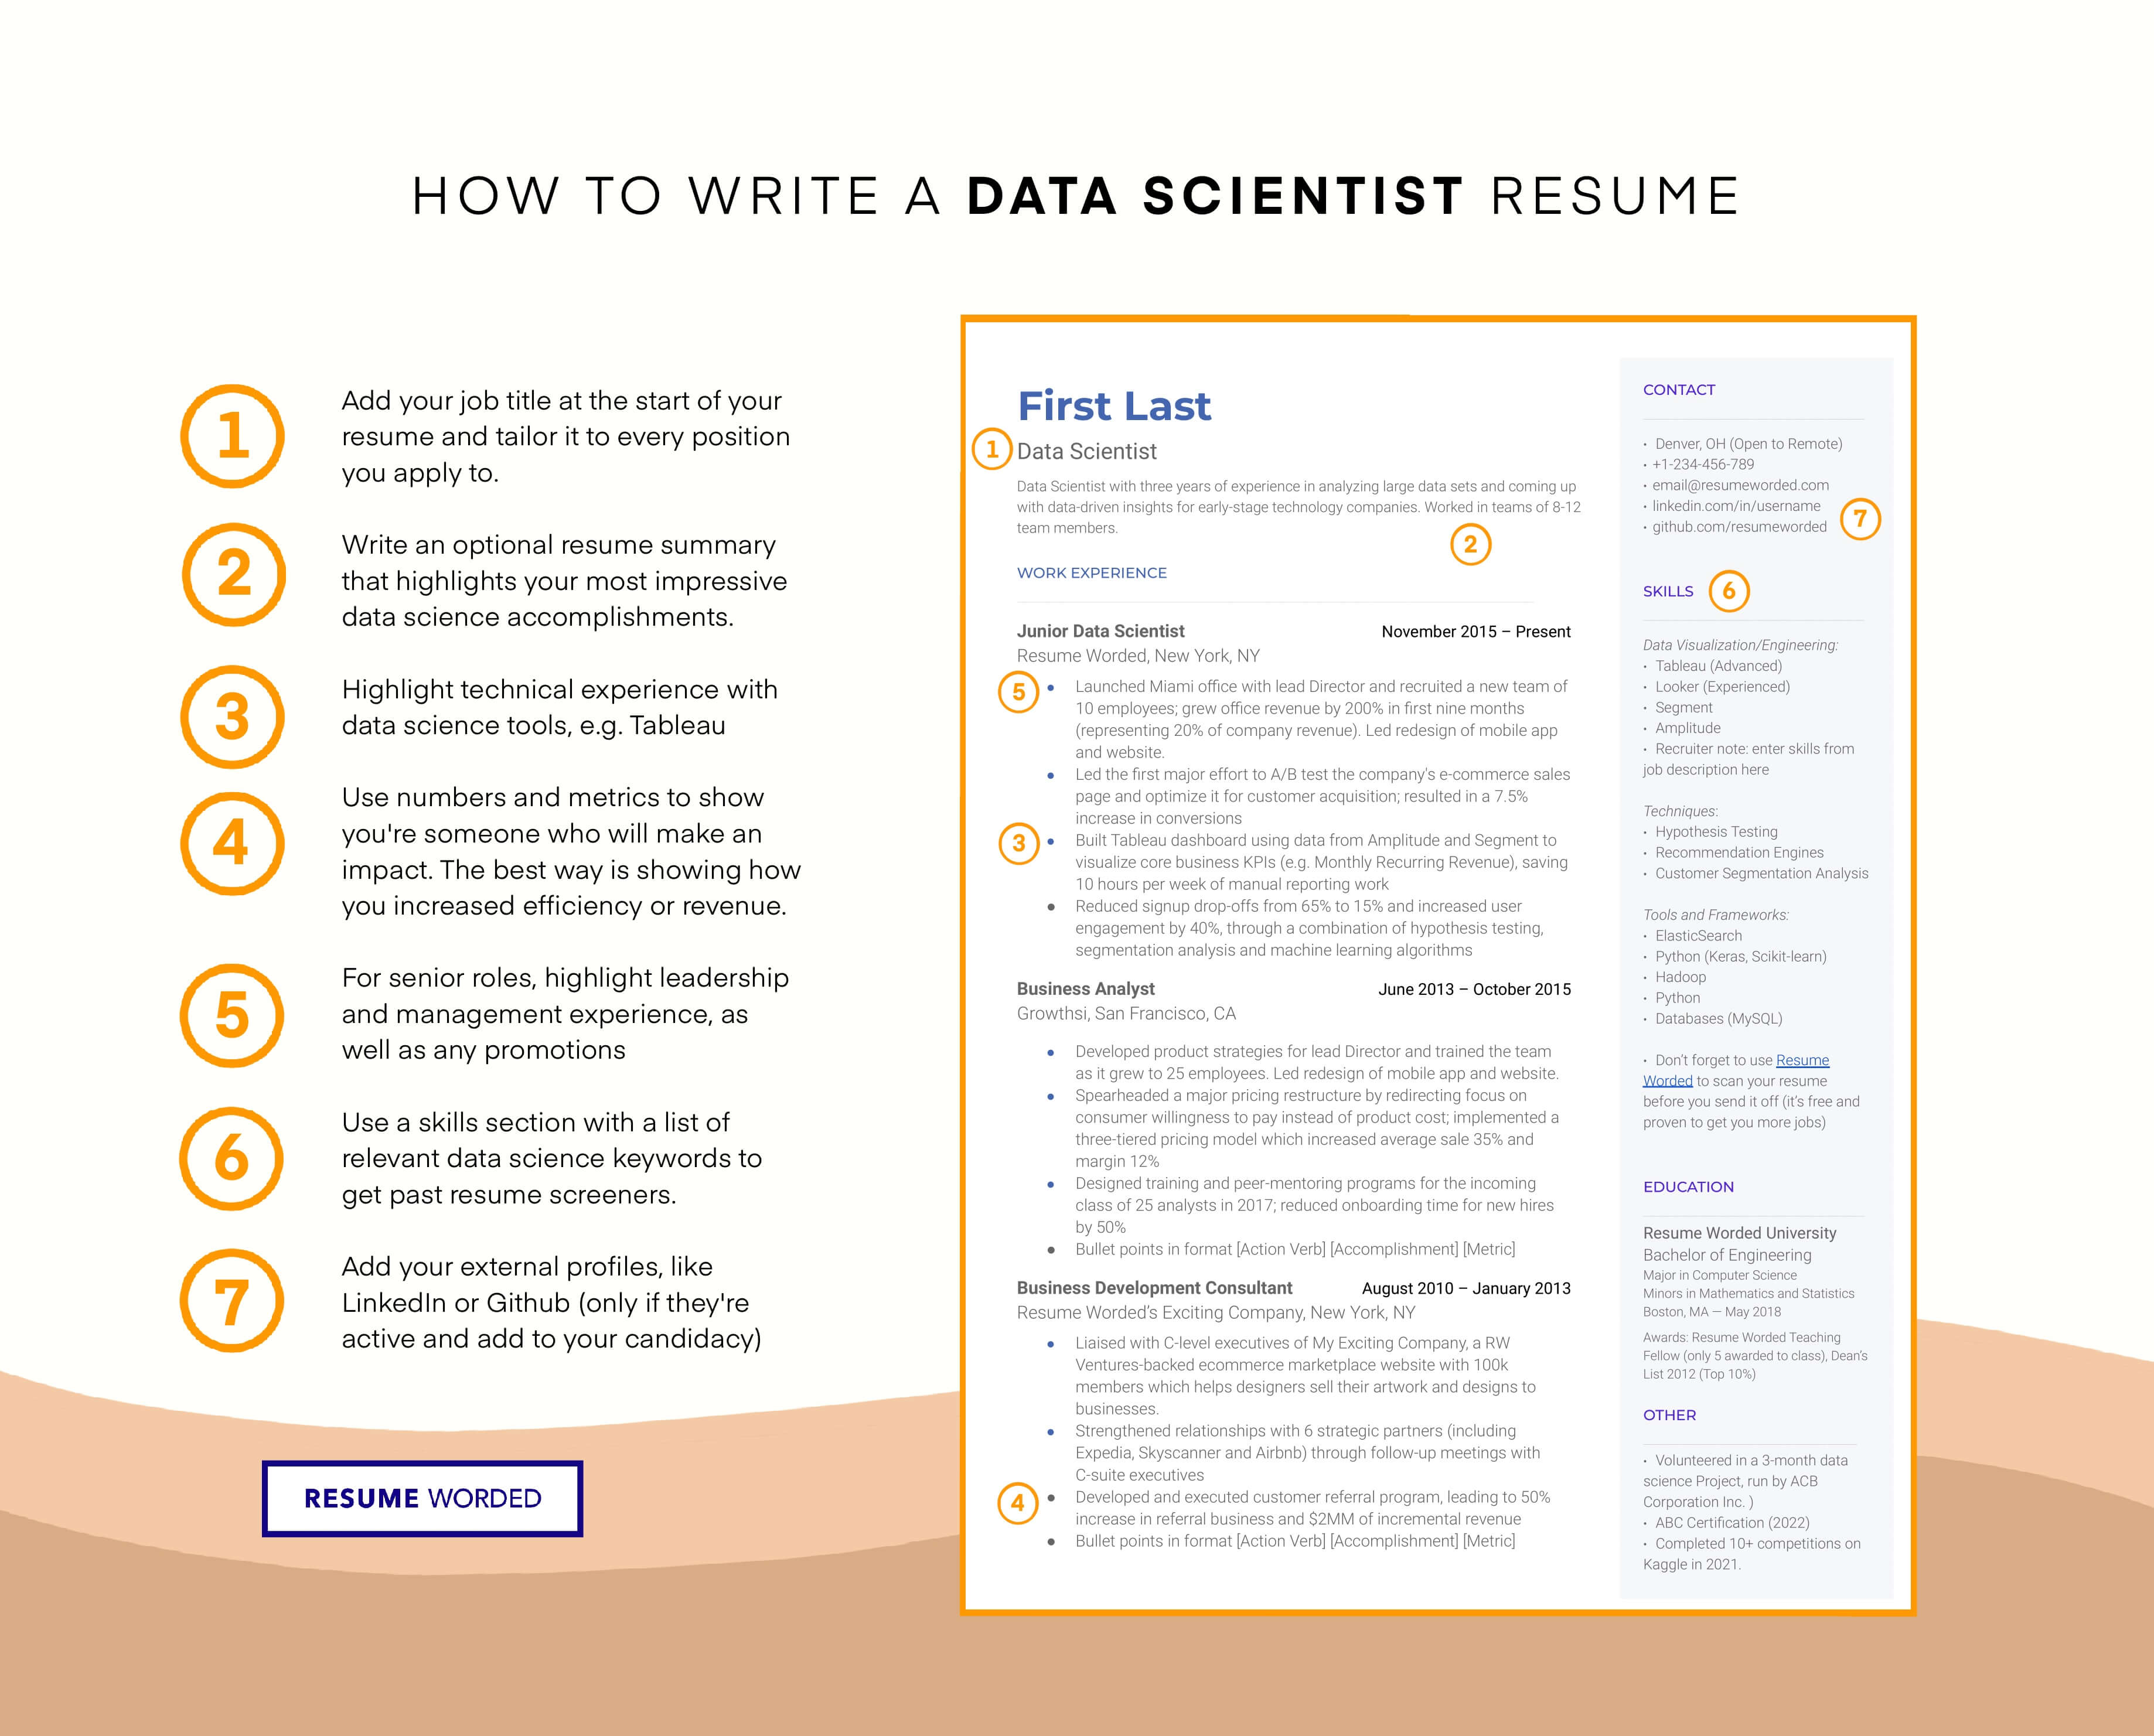 Numbers and metrics relevant to senior data scientists - Senior Data Scientist Resume